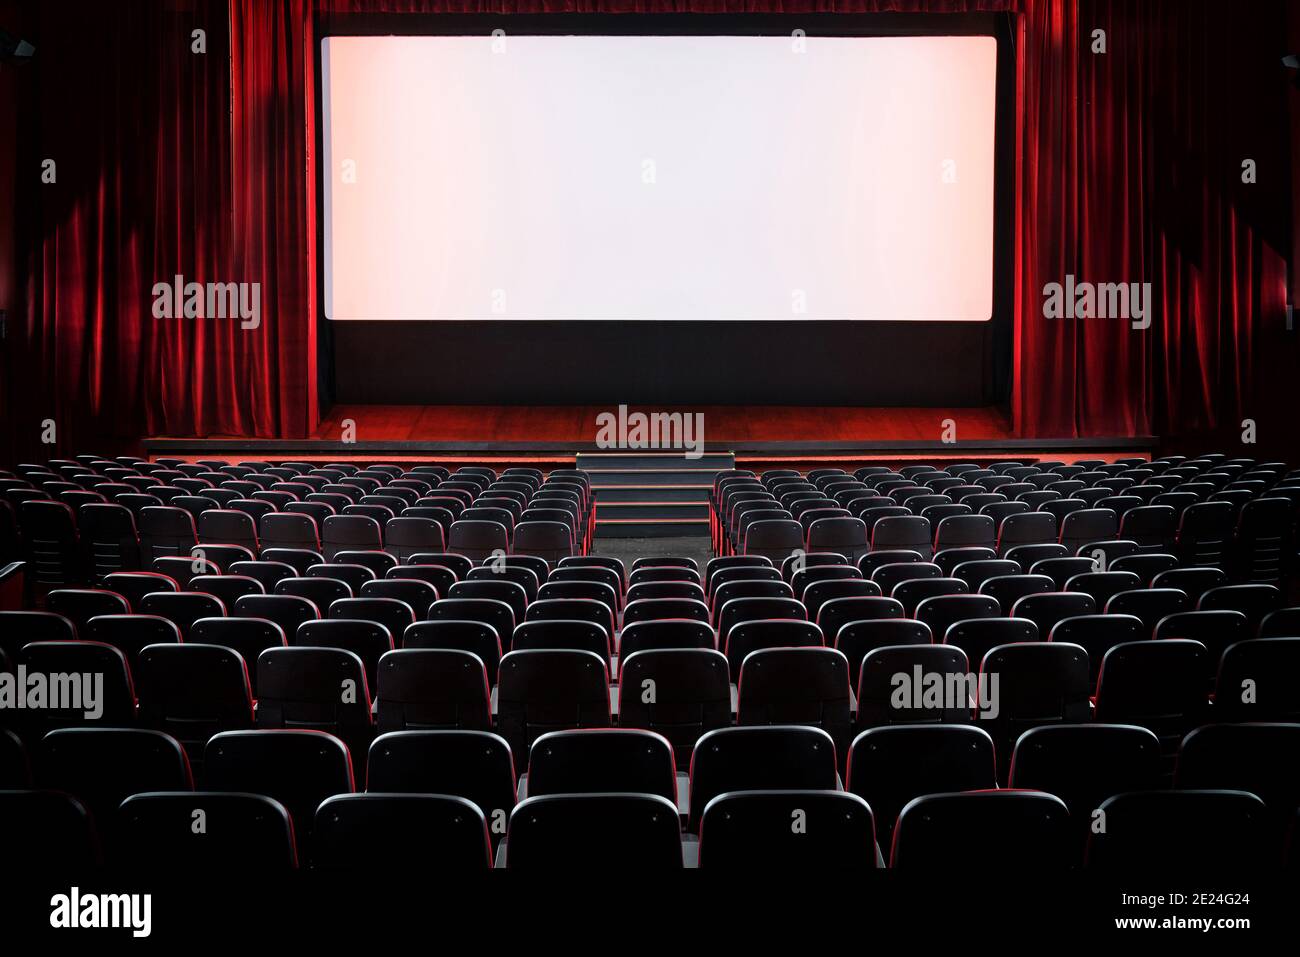 Auditorium eines leeren Kinos und Bühne mit geöffnet Rote Samtvorhänge von der Rückseite der Reihen betrachtet Sitze mit Beleuchtung auf dem Bildschirm Stockfoto